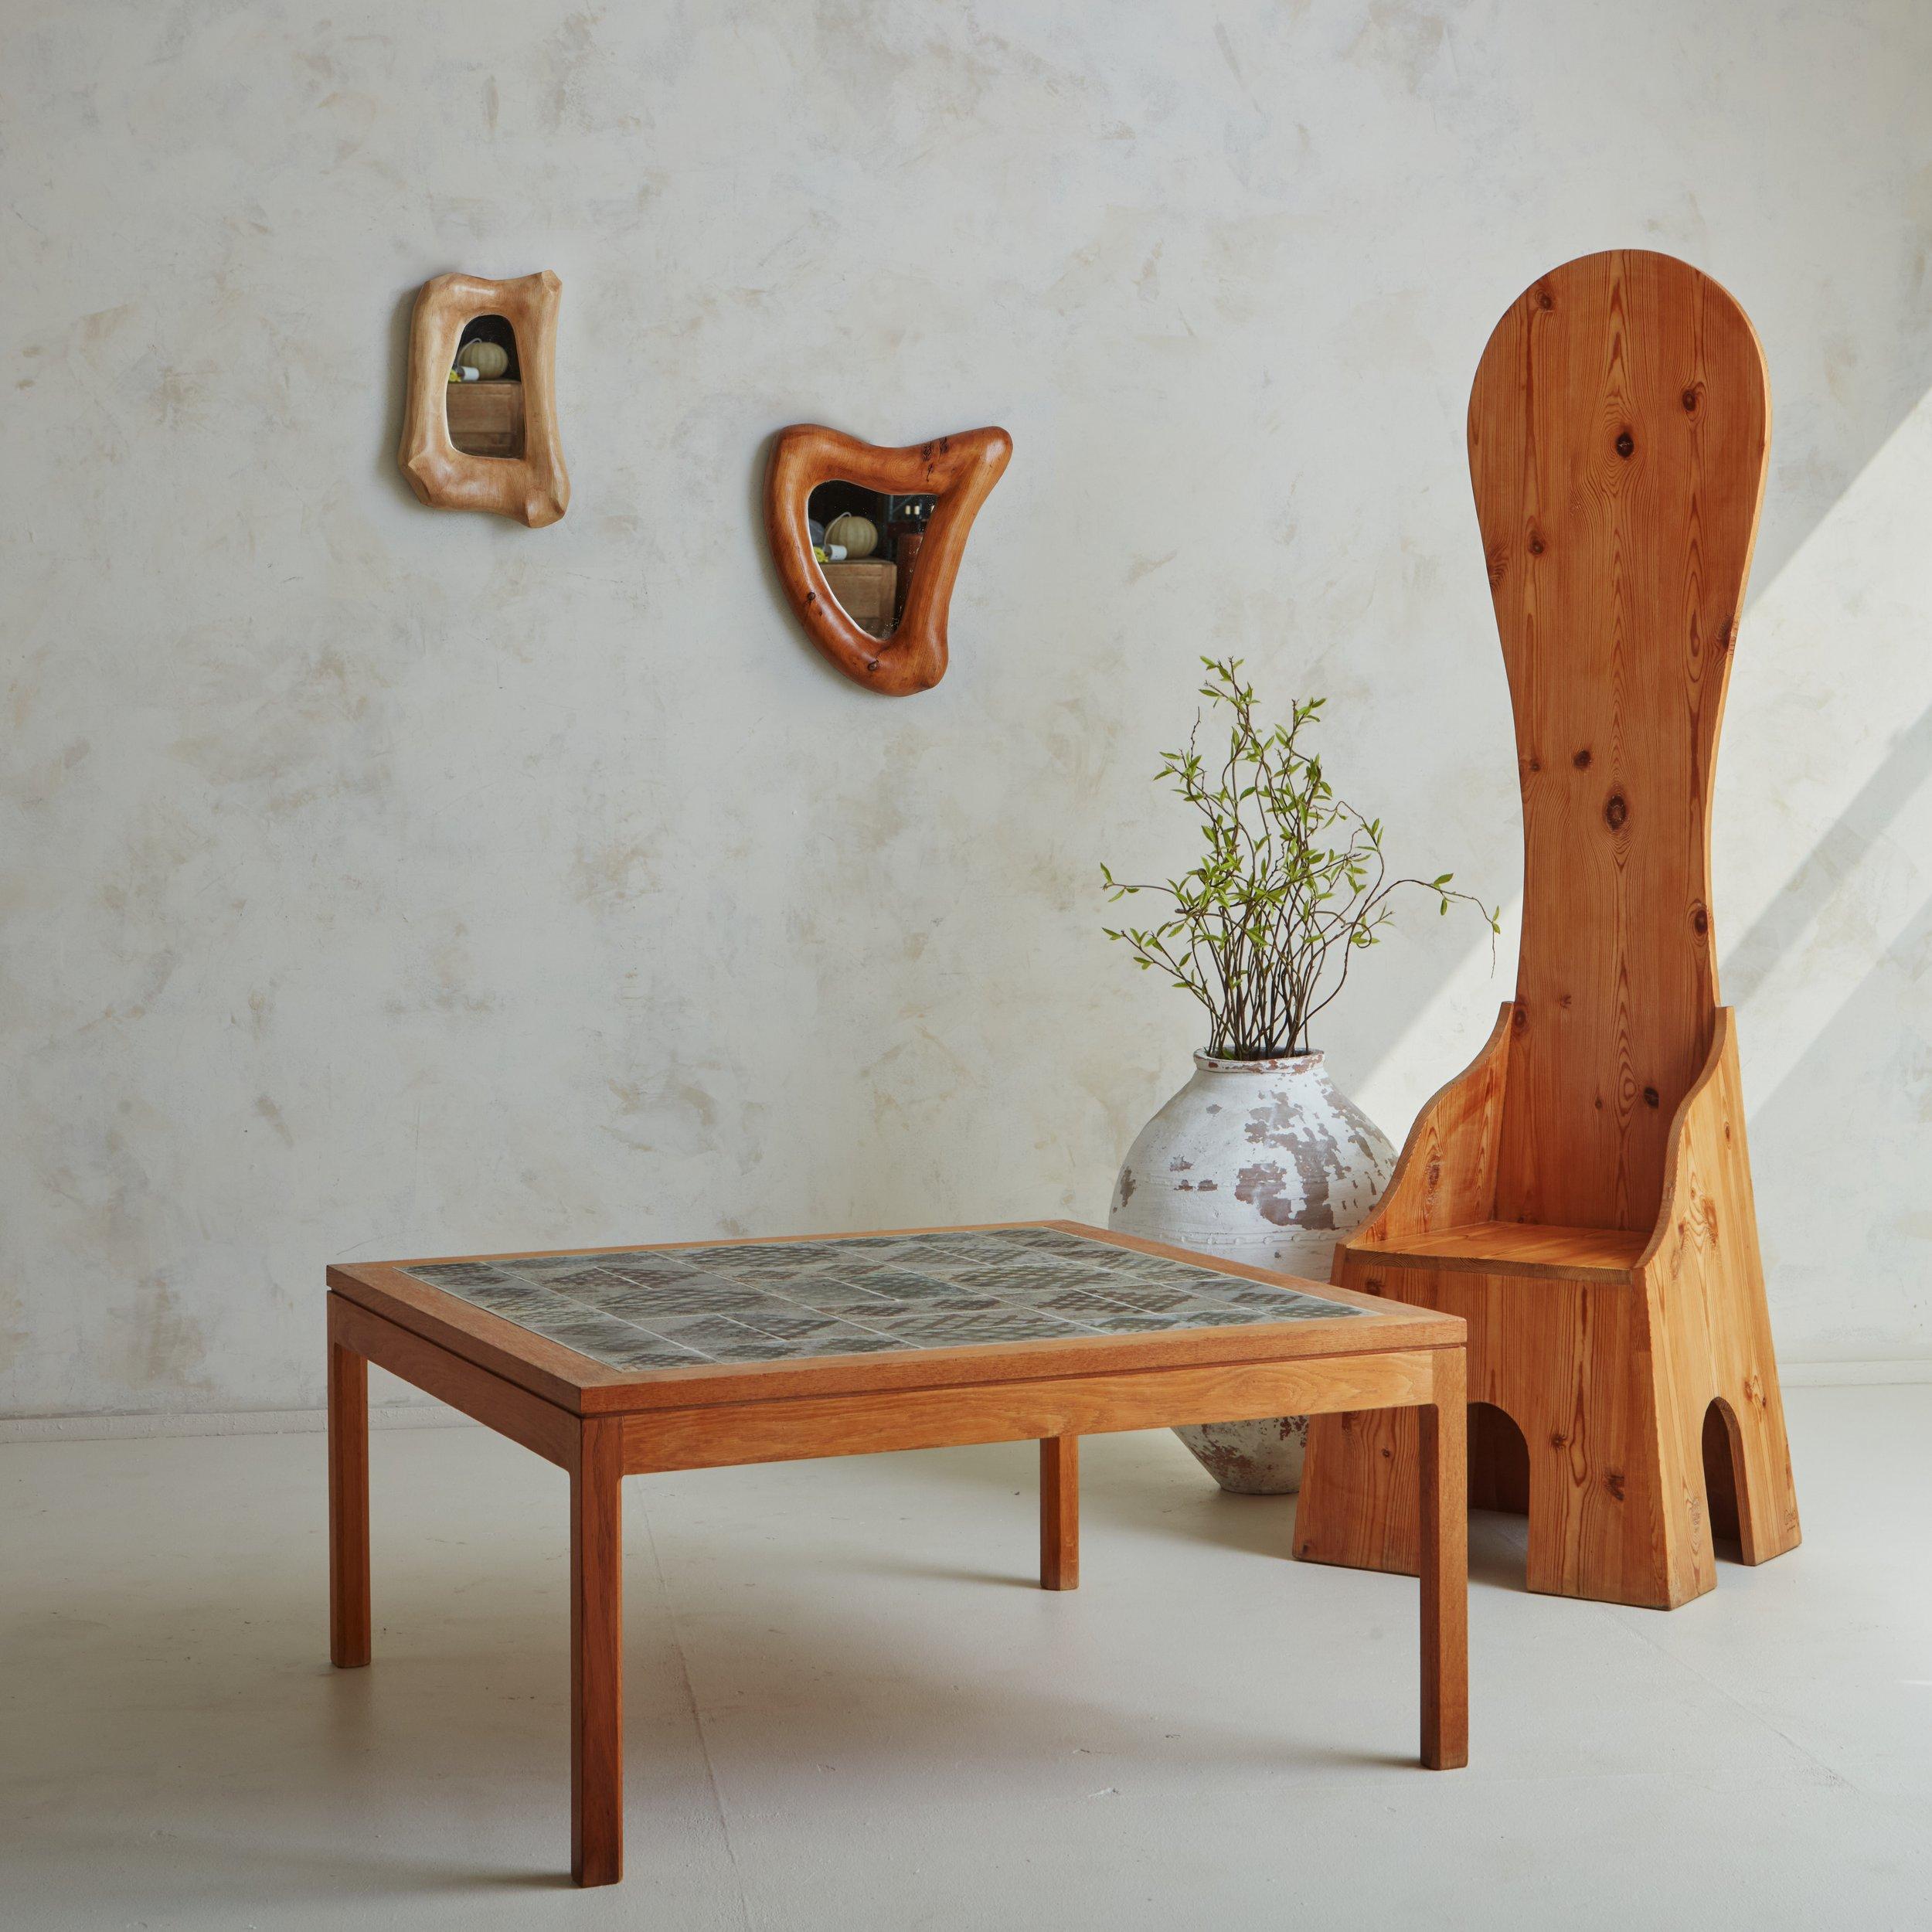 Ein italienischer Sedia Alta Stuhl, entworfen von Mario Ceroli für Poltronova im Jahr 1972. Dieser skulpturale Stuhl wurde aus wunderschön gemasertem Tannenholz geschnitzt und zeichnet sich durch eine dramatisch hohe, geschwungene Rückenlehne und